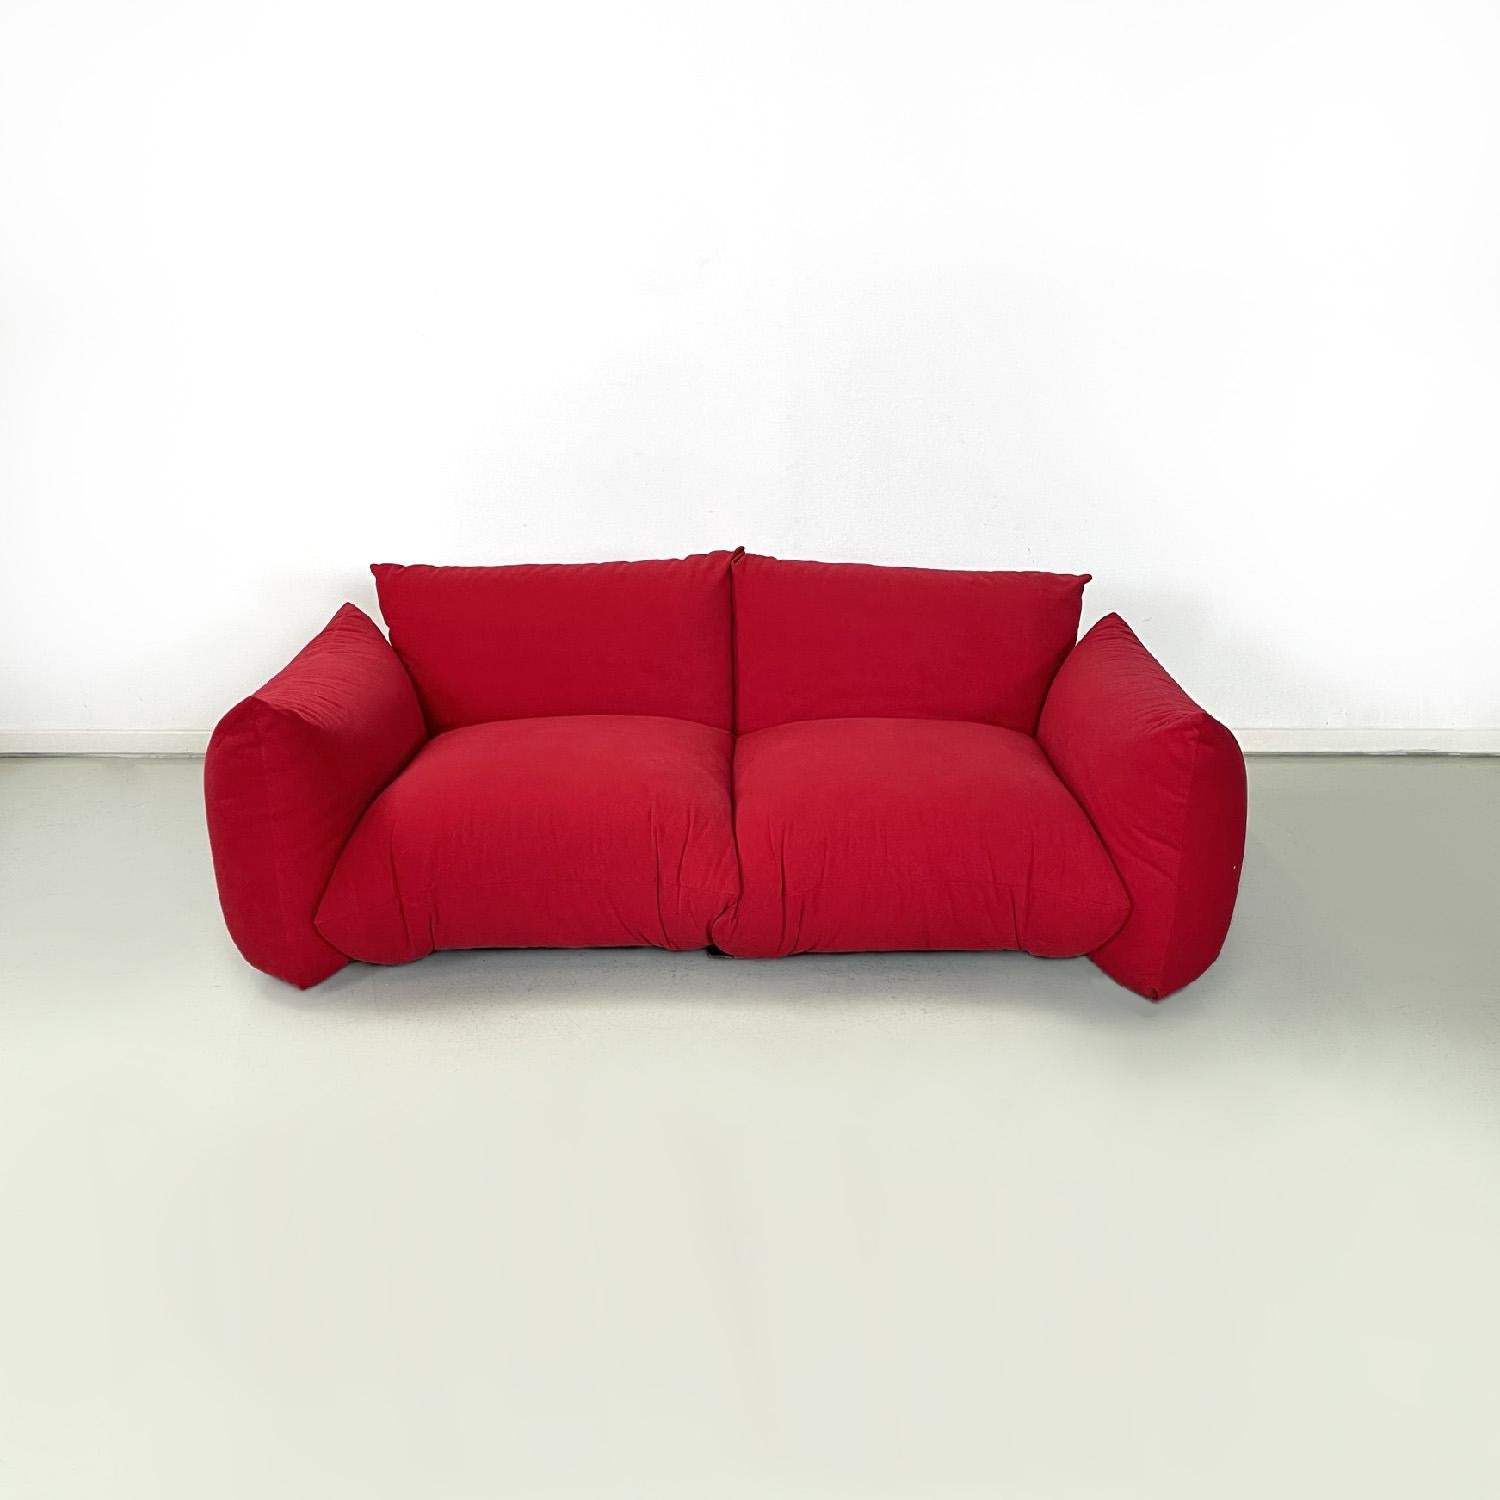 Canapé rouge moderne italien Marenco par Mario Marenco pour Arflex, 1970
Paire de canapés rouges mod. Marenco. Les assises rectangulaires des canapés sont constituées de deux coussins rembourrés recouverts d'un tissu rouge de type alcantara, tout